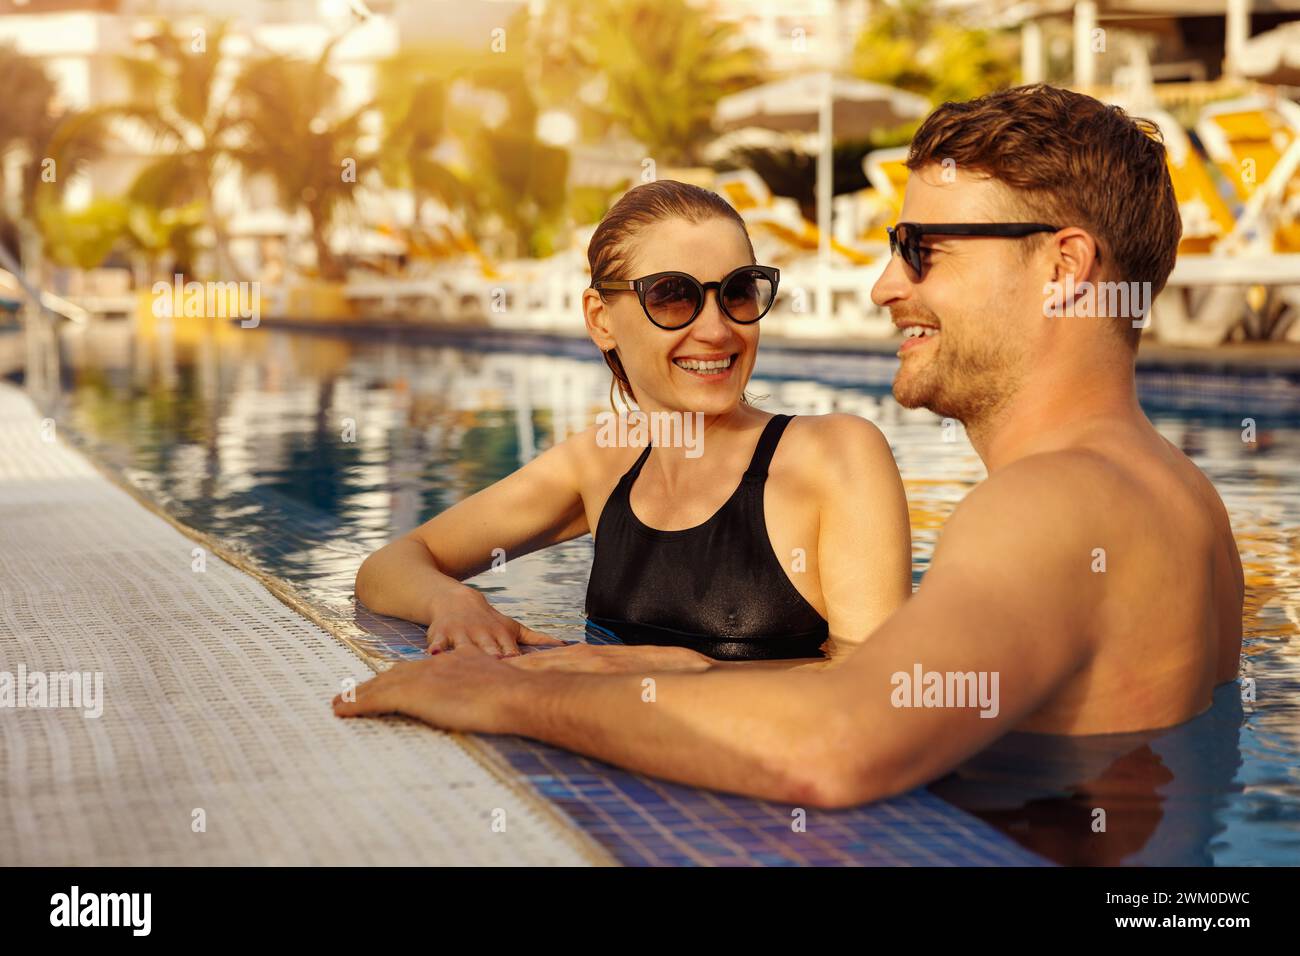 giovani coppie felici che si rilassano insieme nella piscina del resort tropicale. vacanze estive, fuga romantica Foto Stock